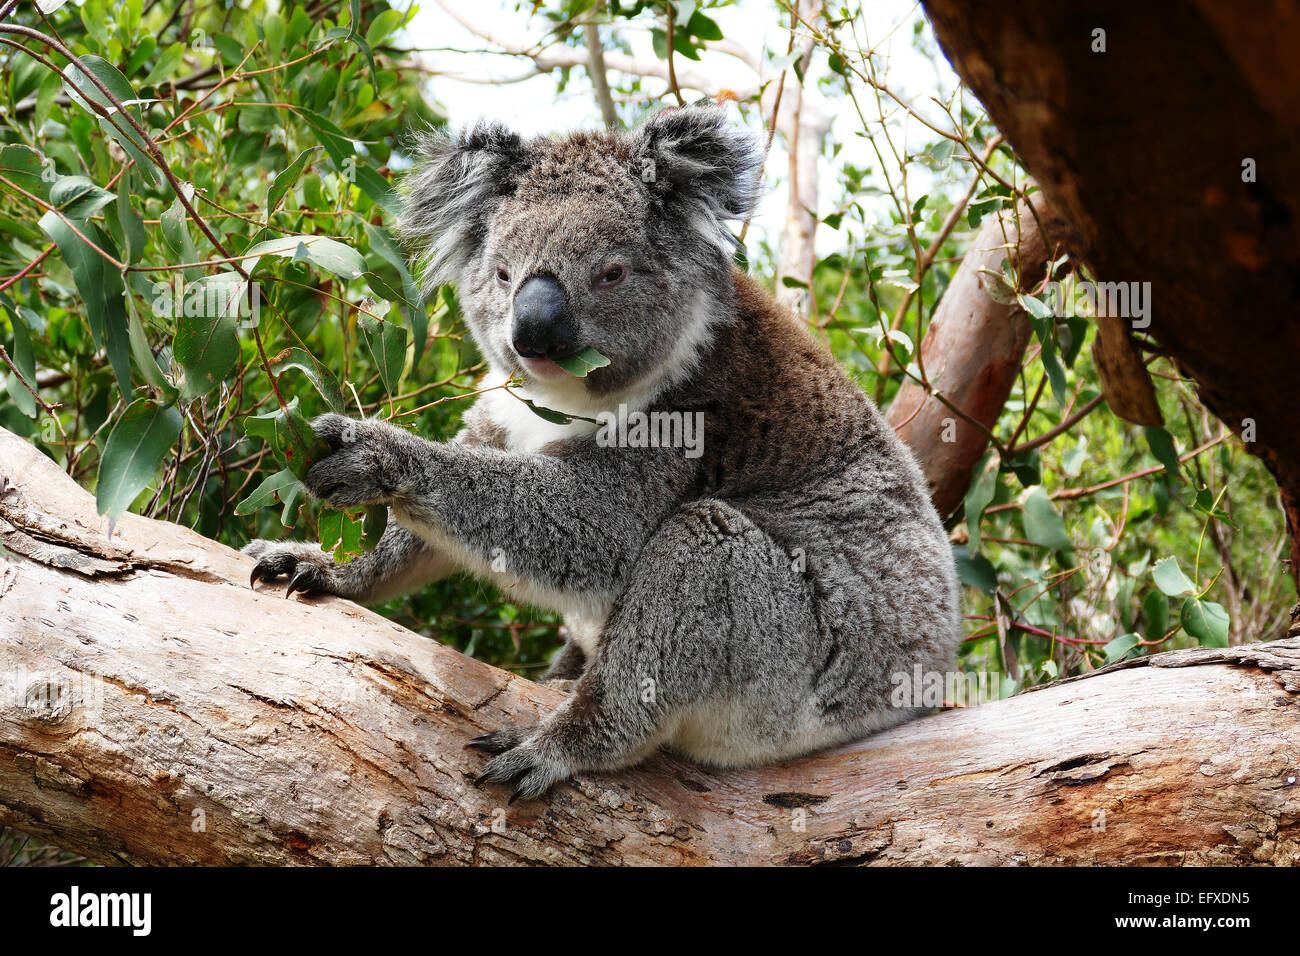 Koala eating Eucaliptis leaves Stock Photo